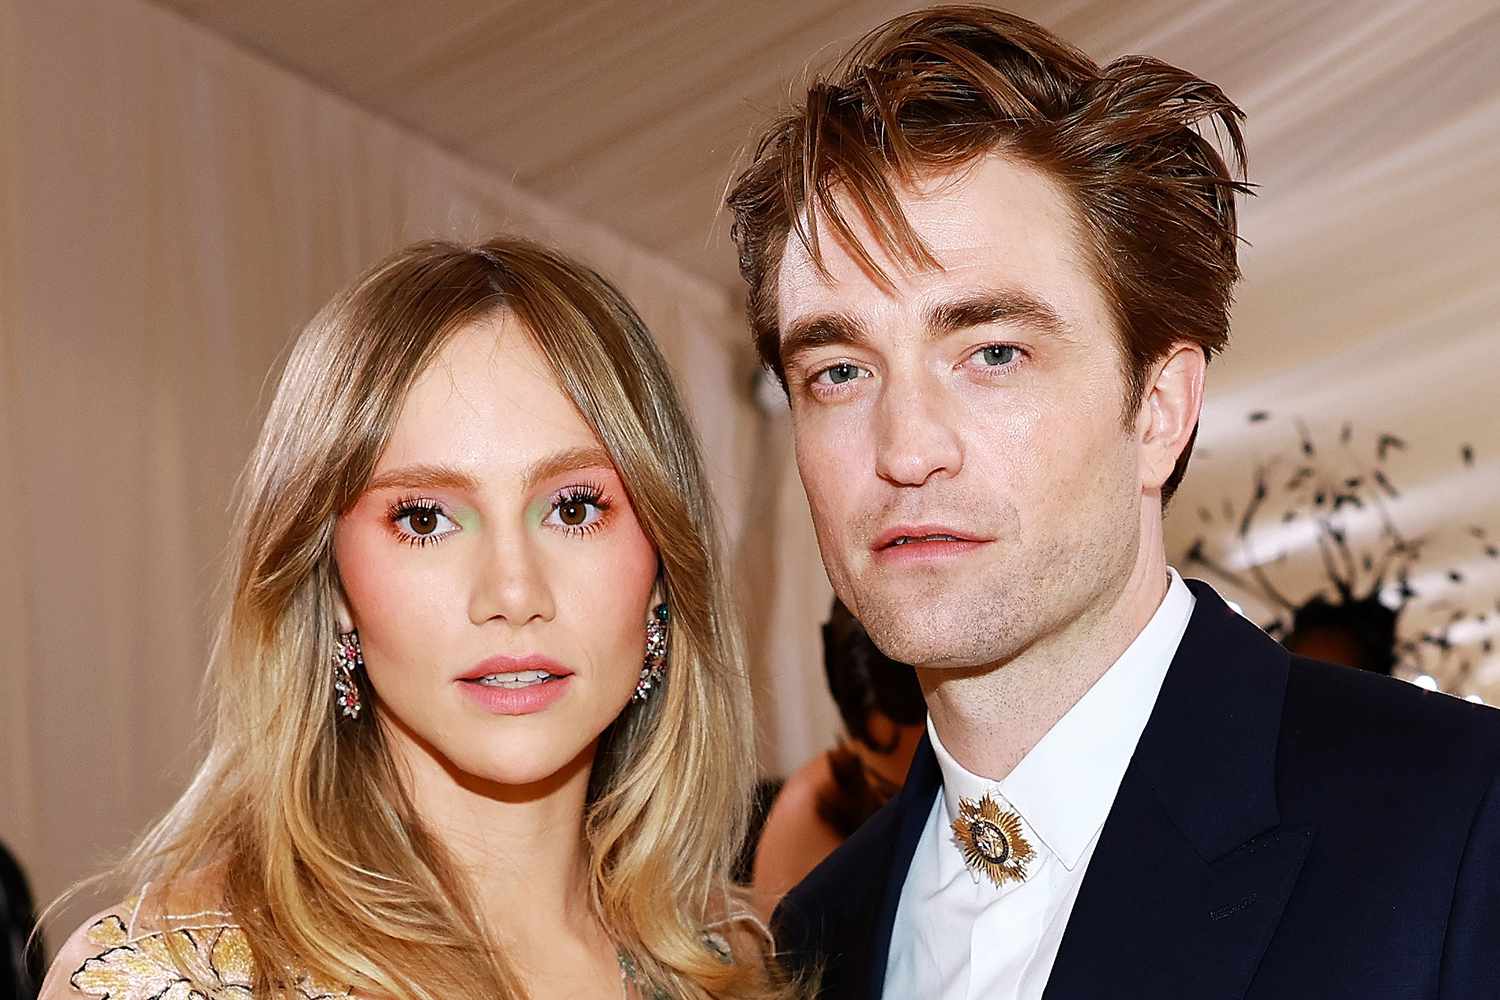 Robert Pattinson đã đính hôn, nàng mẫu Suki Waterhouse khoe luôn nhẫn kim cương khủng?- Ảnh 3.